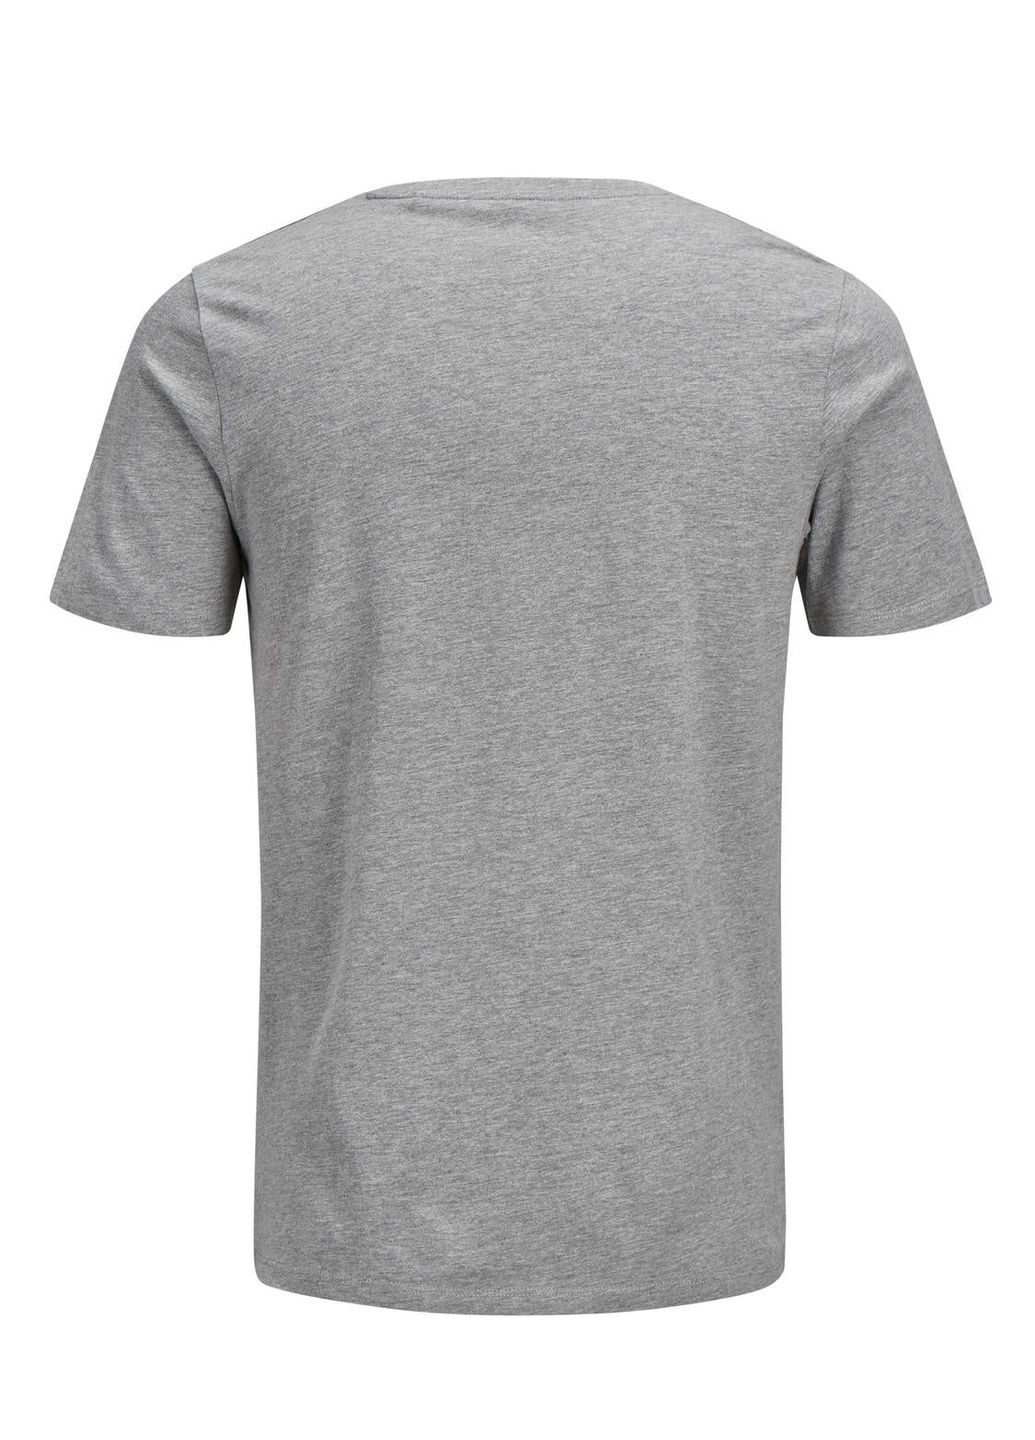 Серая футболка basic,серый меланж с принтом,jack&jones Jack & Jones